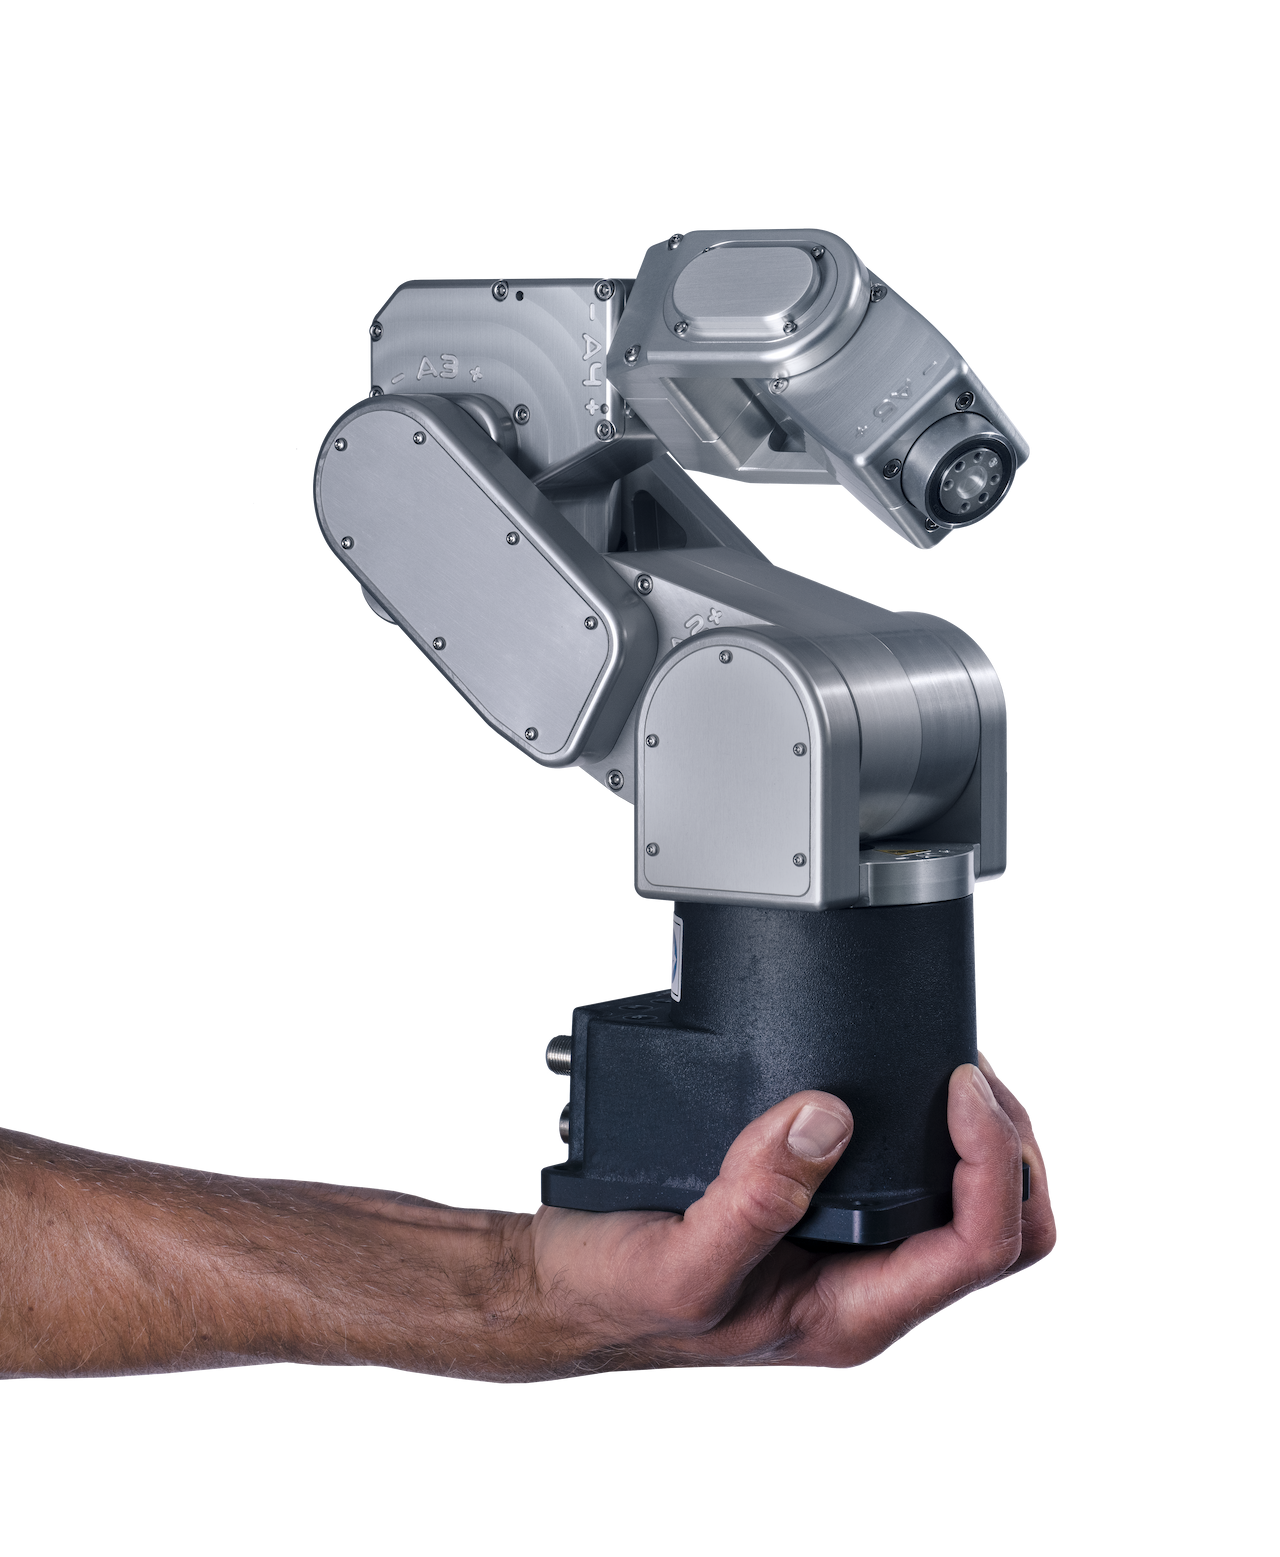 NTO er forhandler af Meca500 – verdens mindste og mest præcise seks-aksede industrielle robotarm